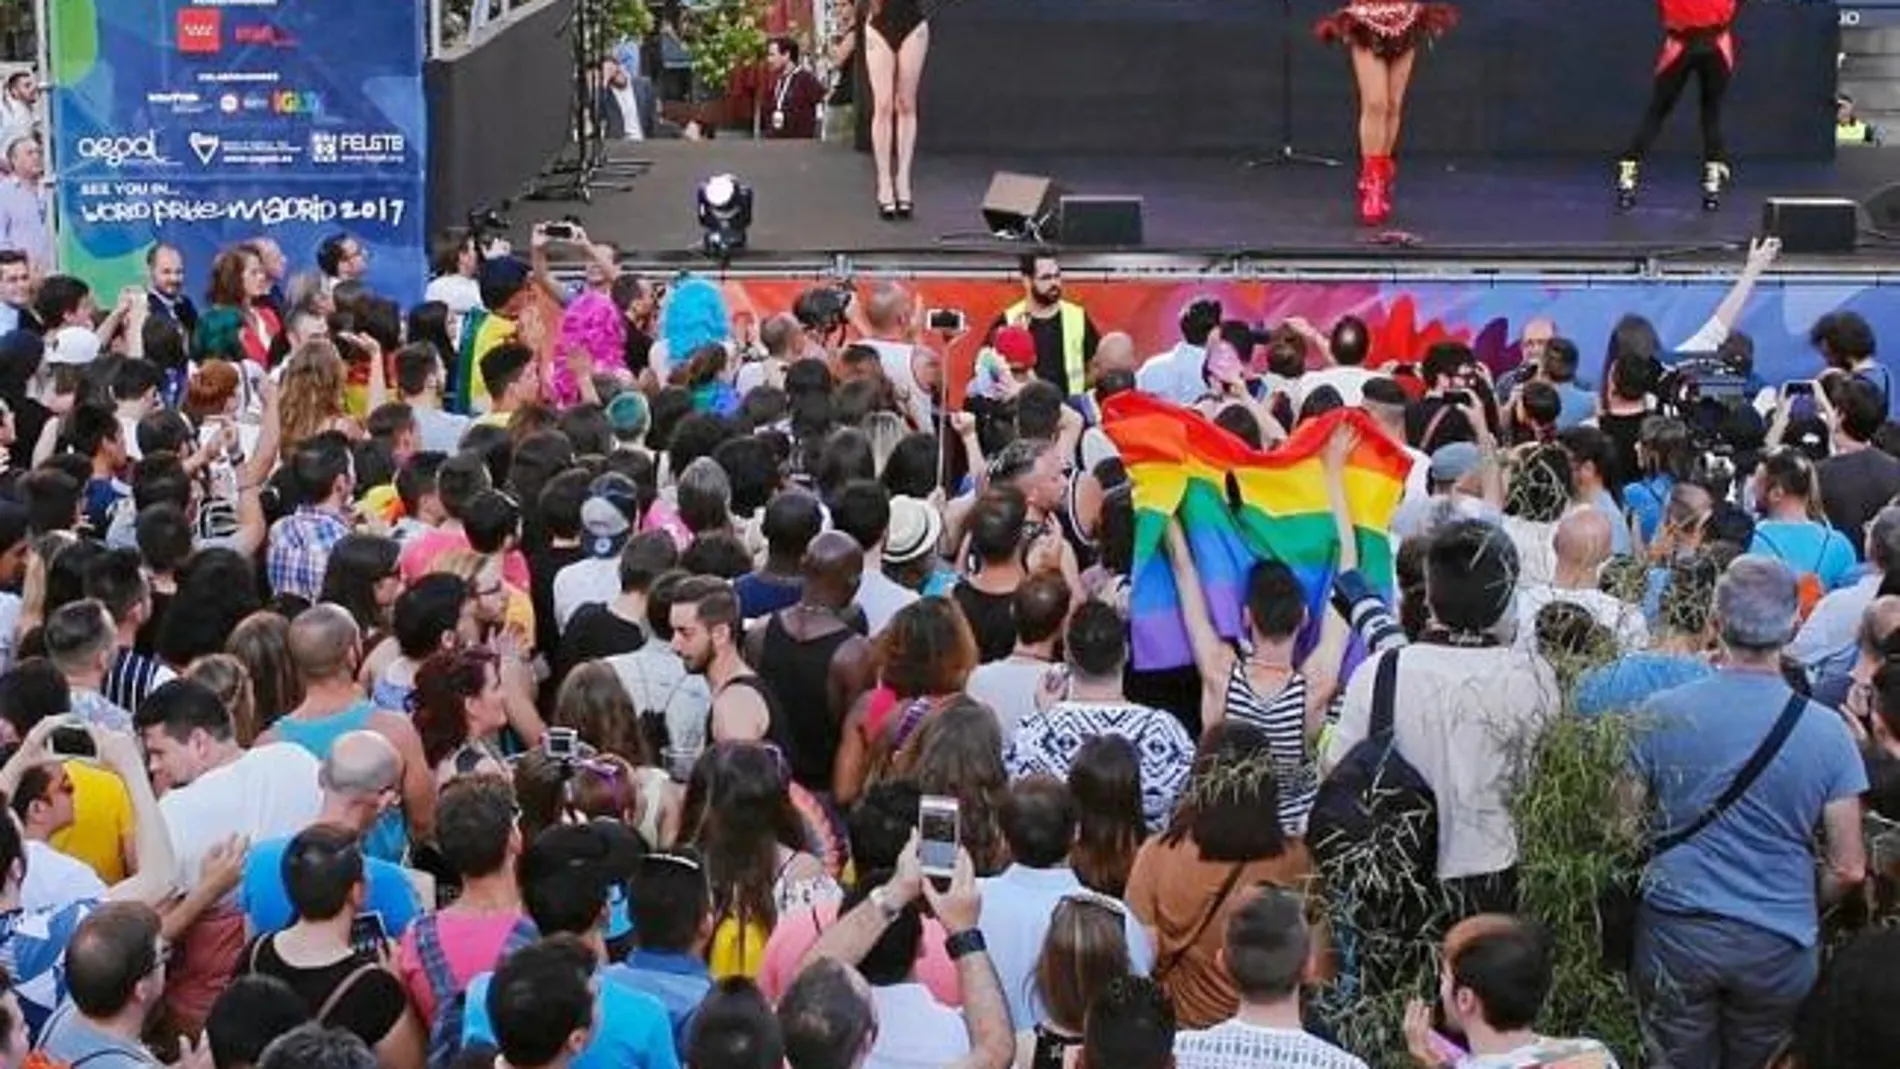 La plaza de Chueca acogió ayer la celebración inaugural del Orgullo que tuvo un recuerdo para las víctimas de Orlando